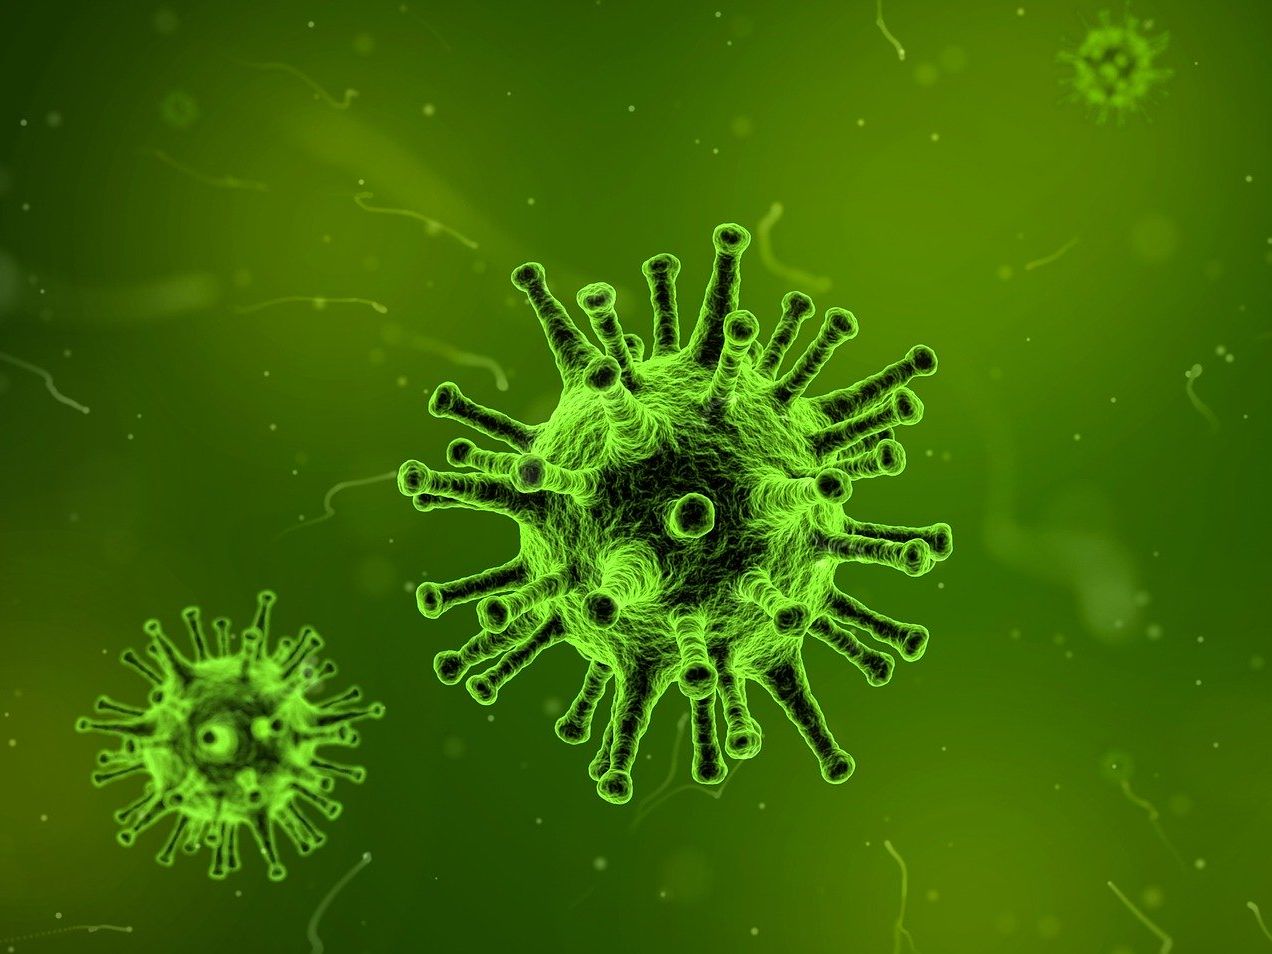 49 Personen in Eschelbronner Alten- und Pflegeeinrichtung mit dem Coronavirus infiziert